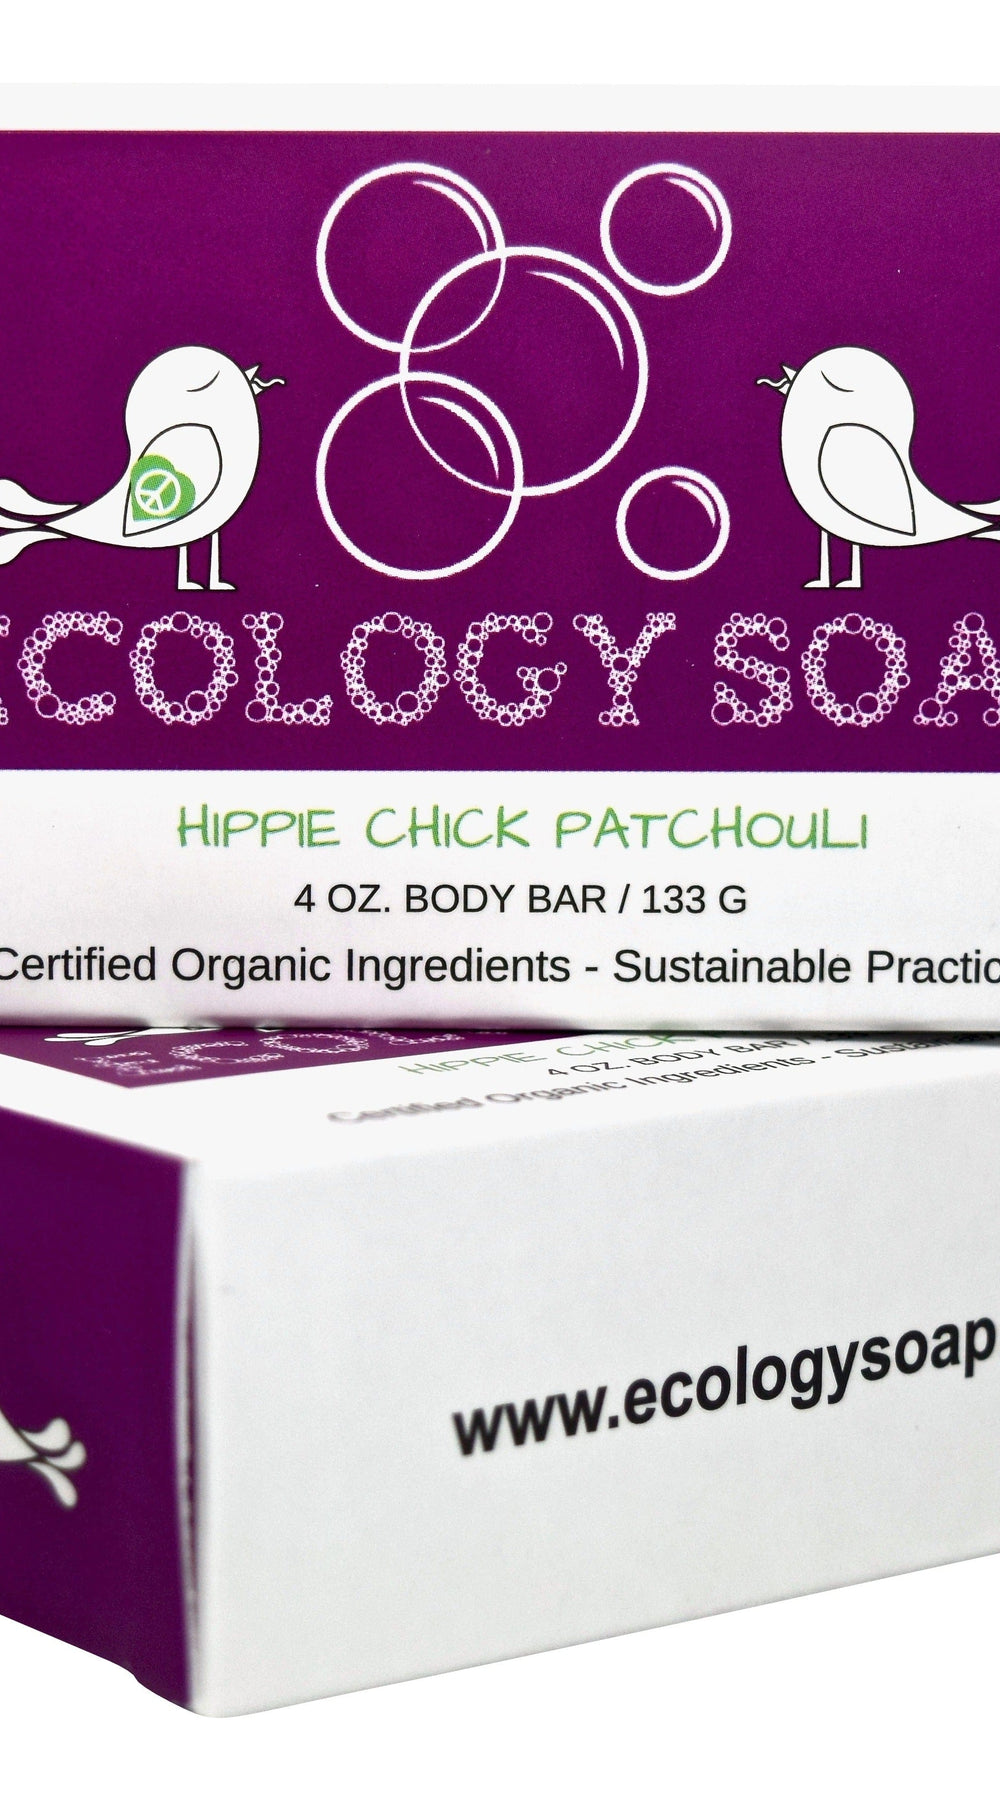 Ecology Soap Hippie Chick Patchouli Body Bar